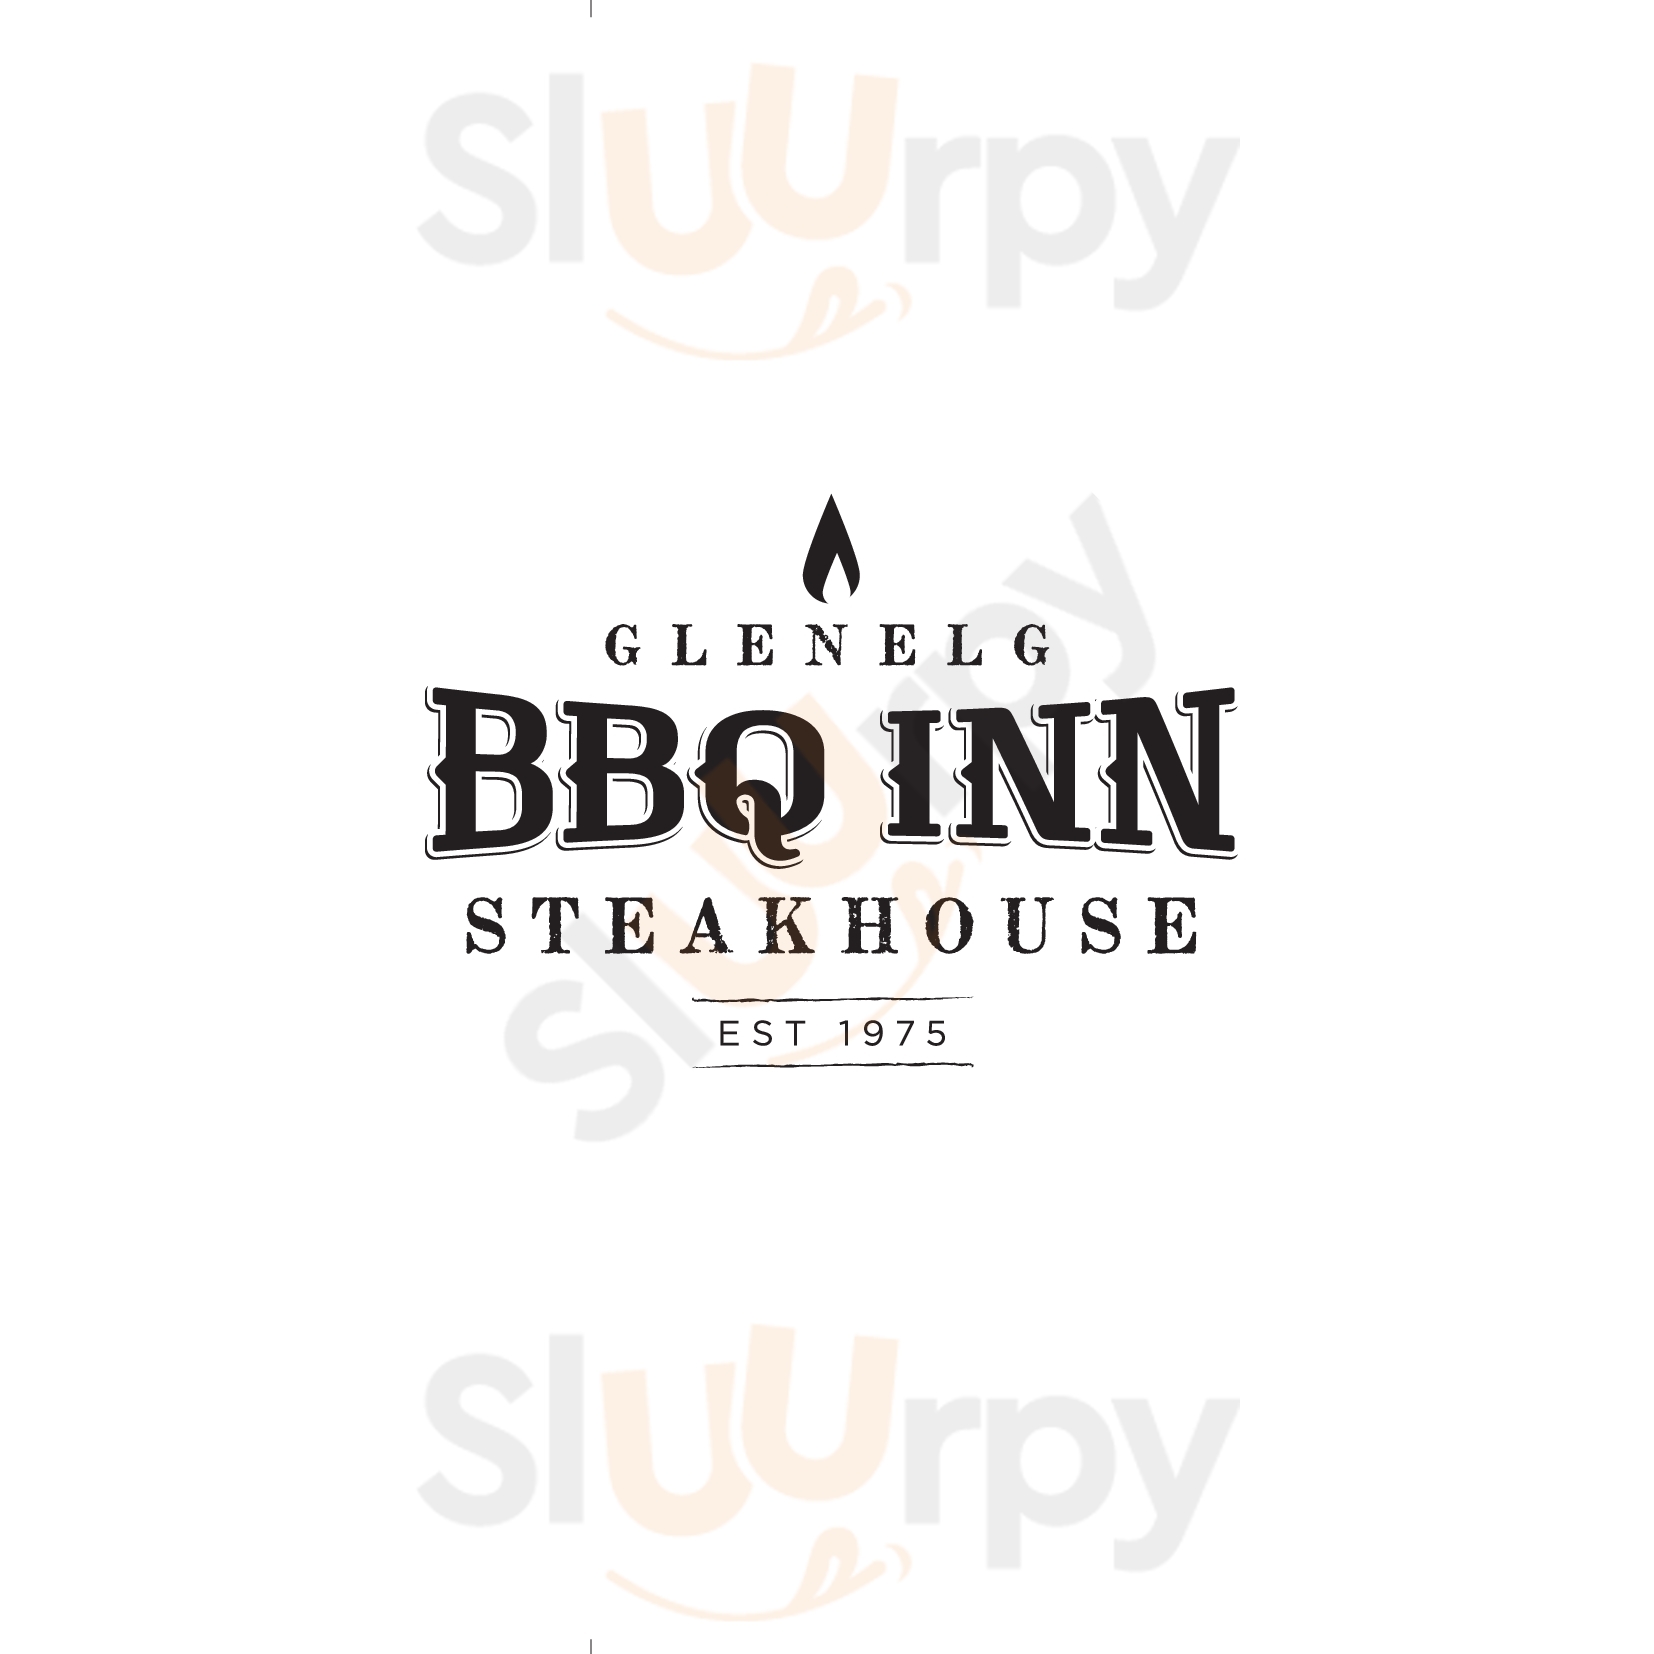 Glenelg Barbeque Inn Glenelg Menu - 1